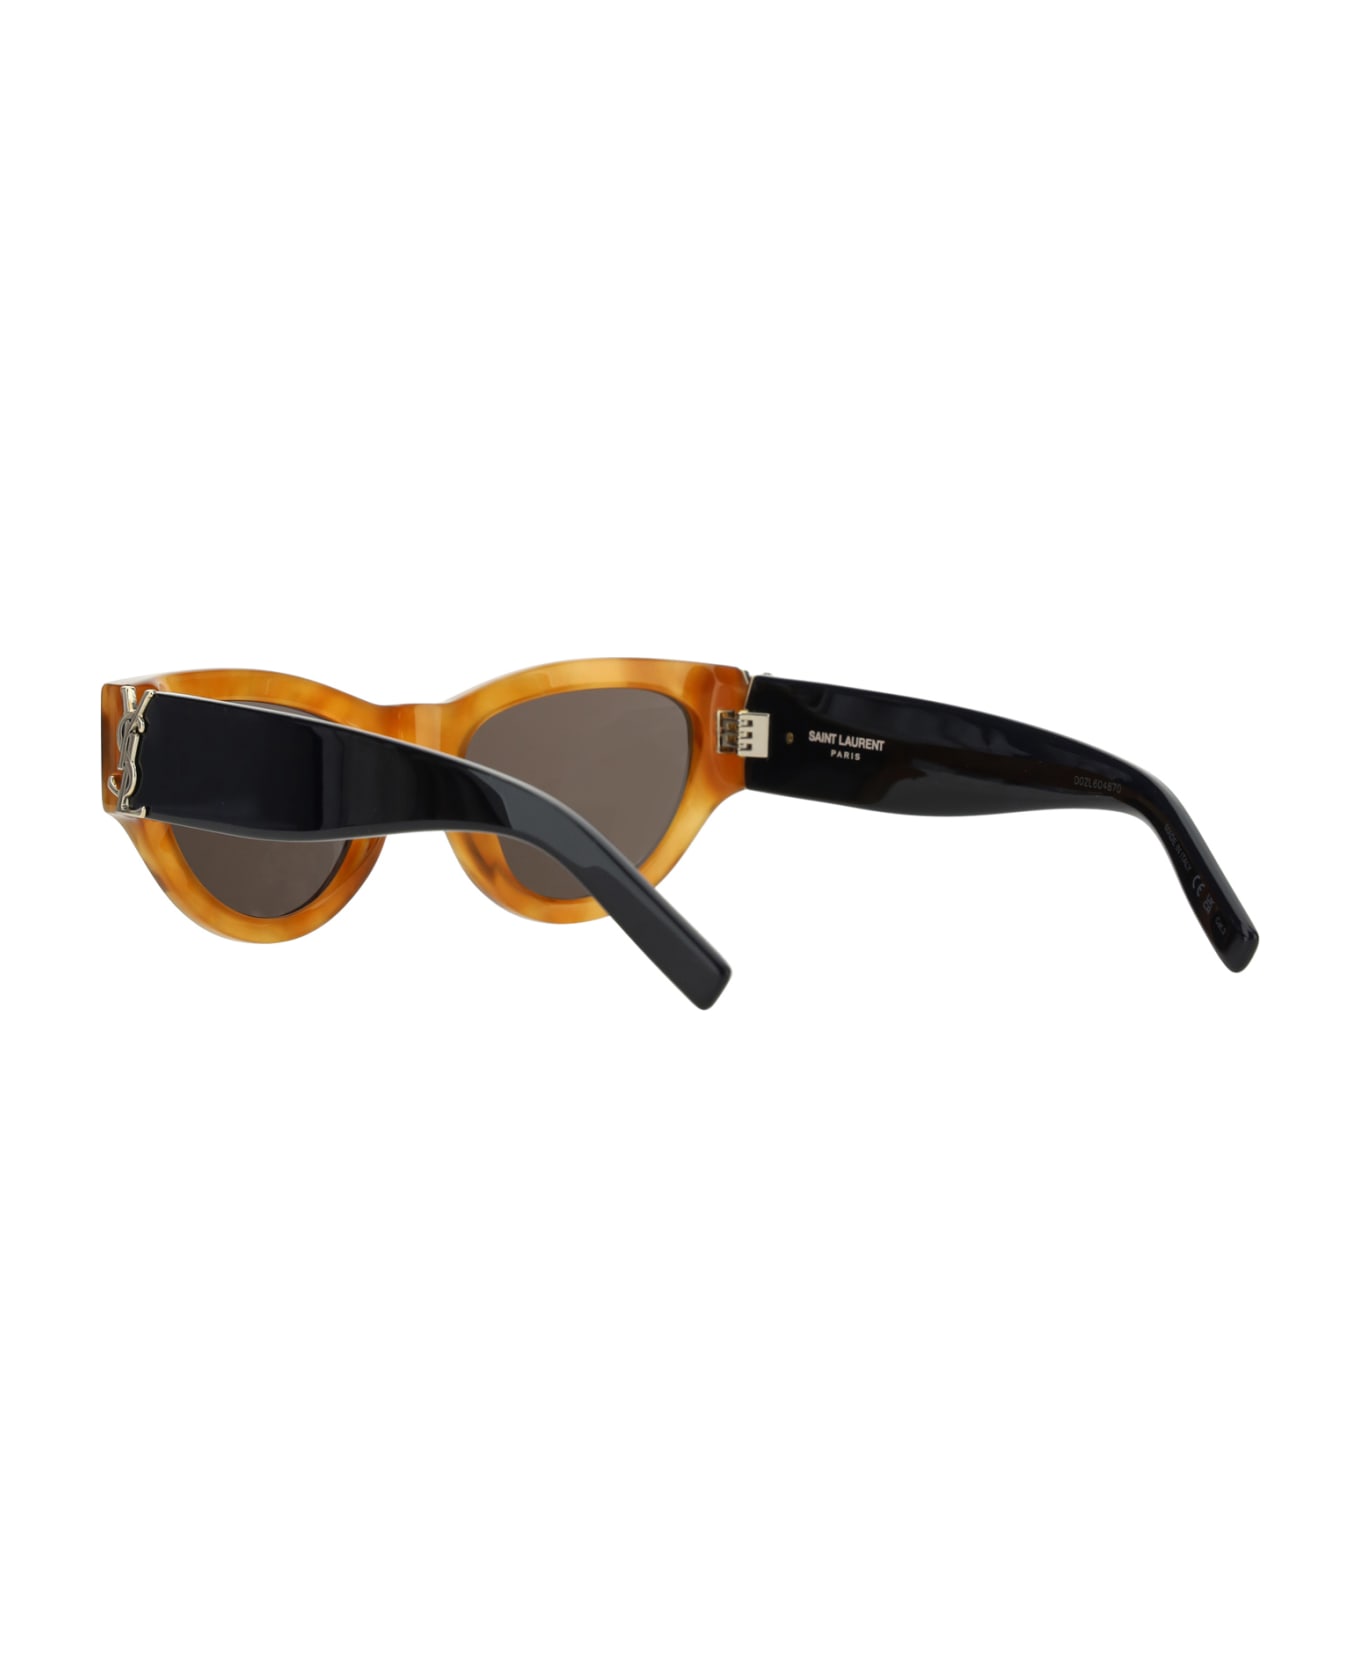 Saint Laurent M94 Sunglasses - Havana Black Black